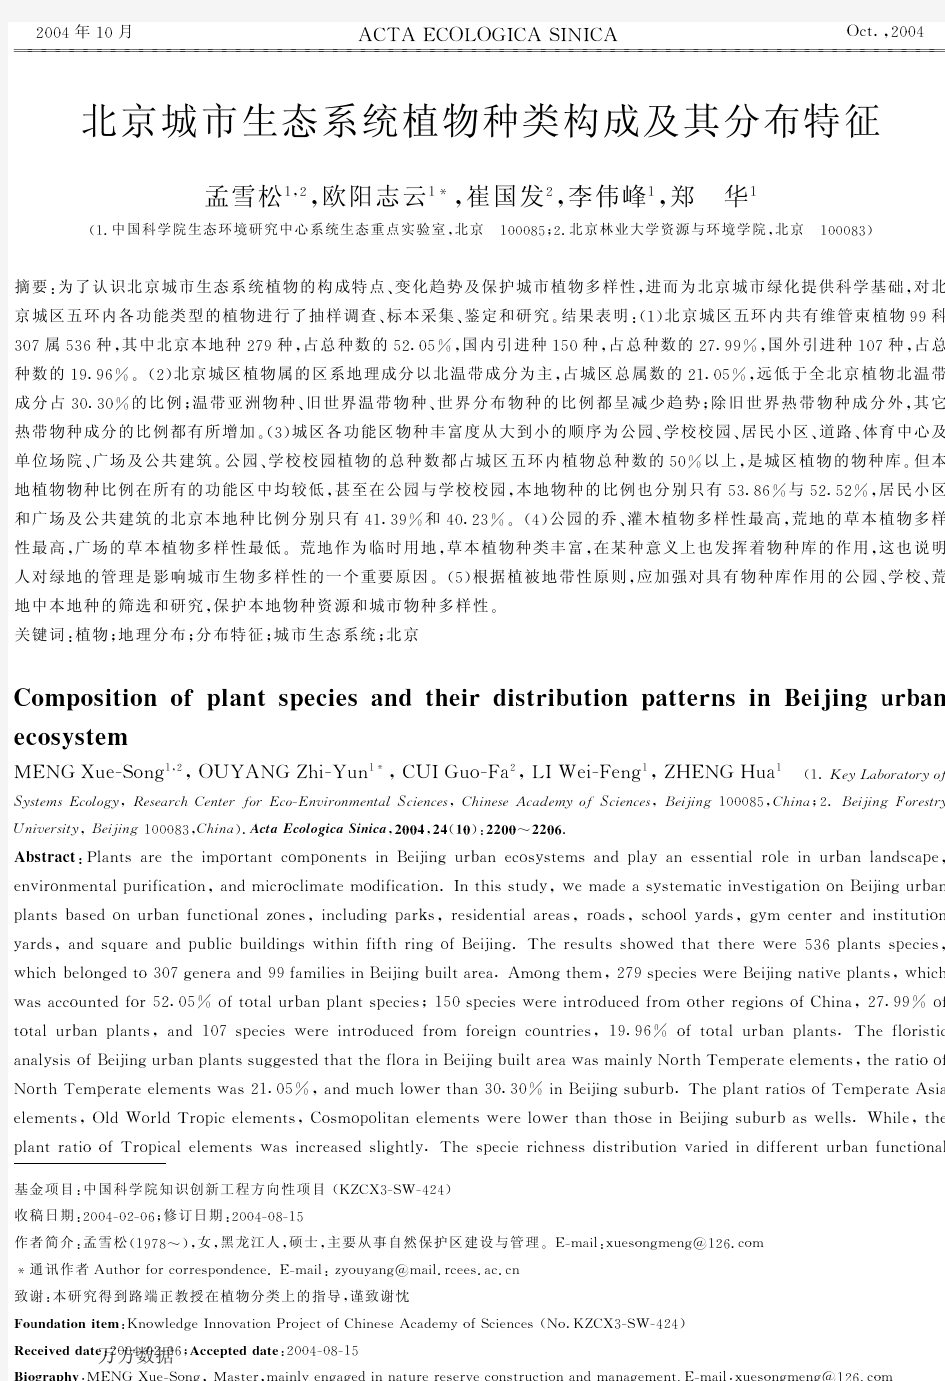 北京城市生态系统植物种类构成及其分布特征